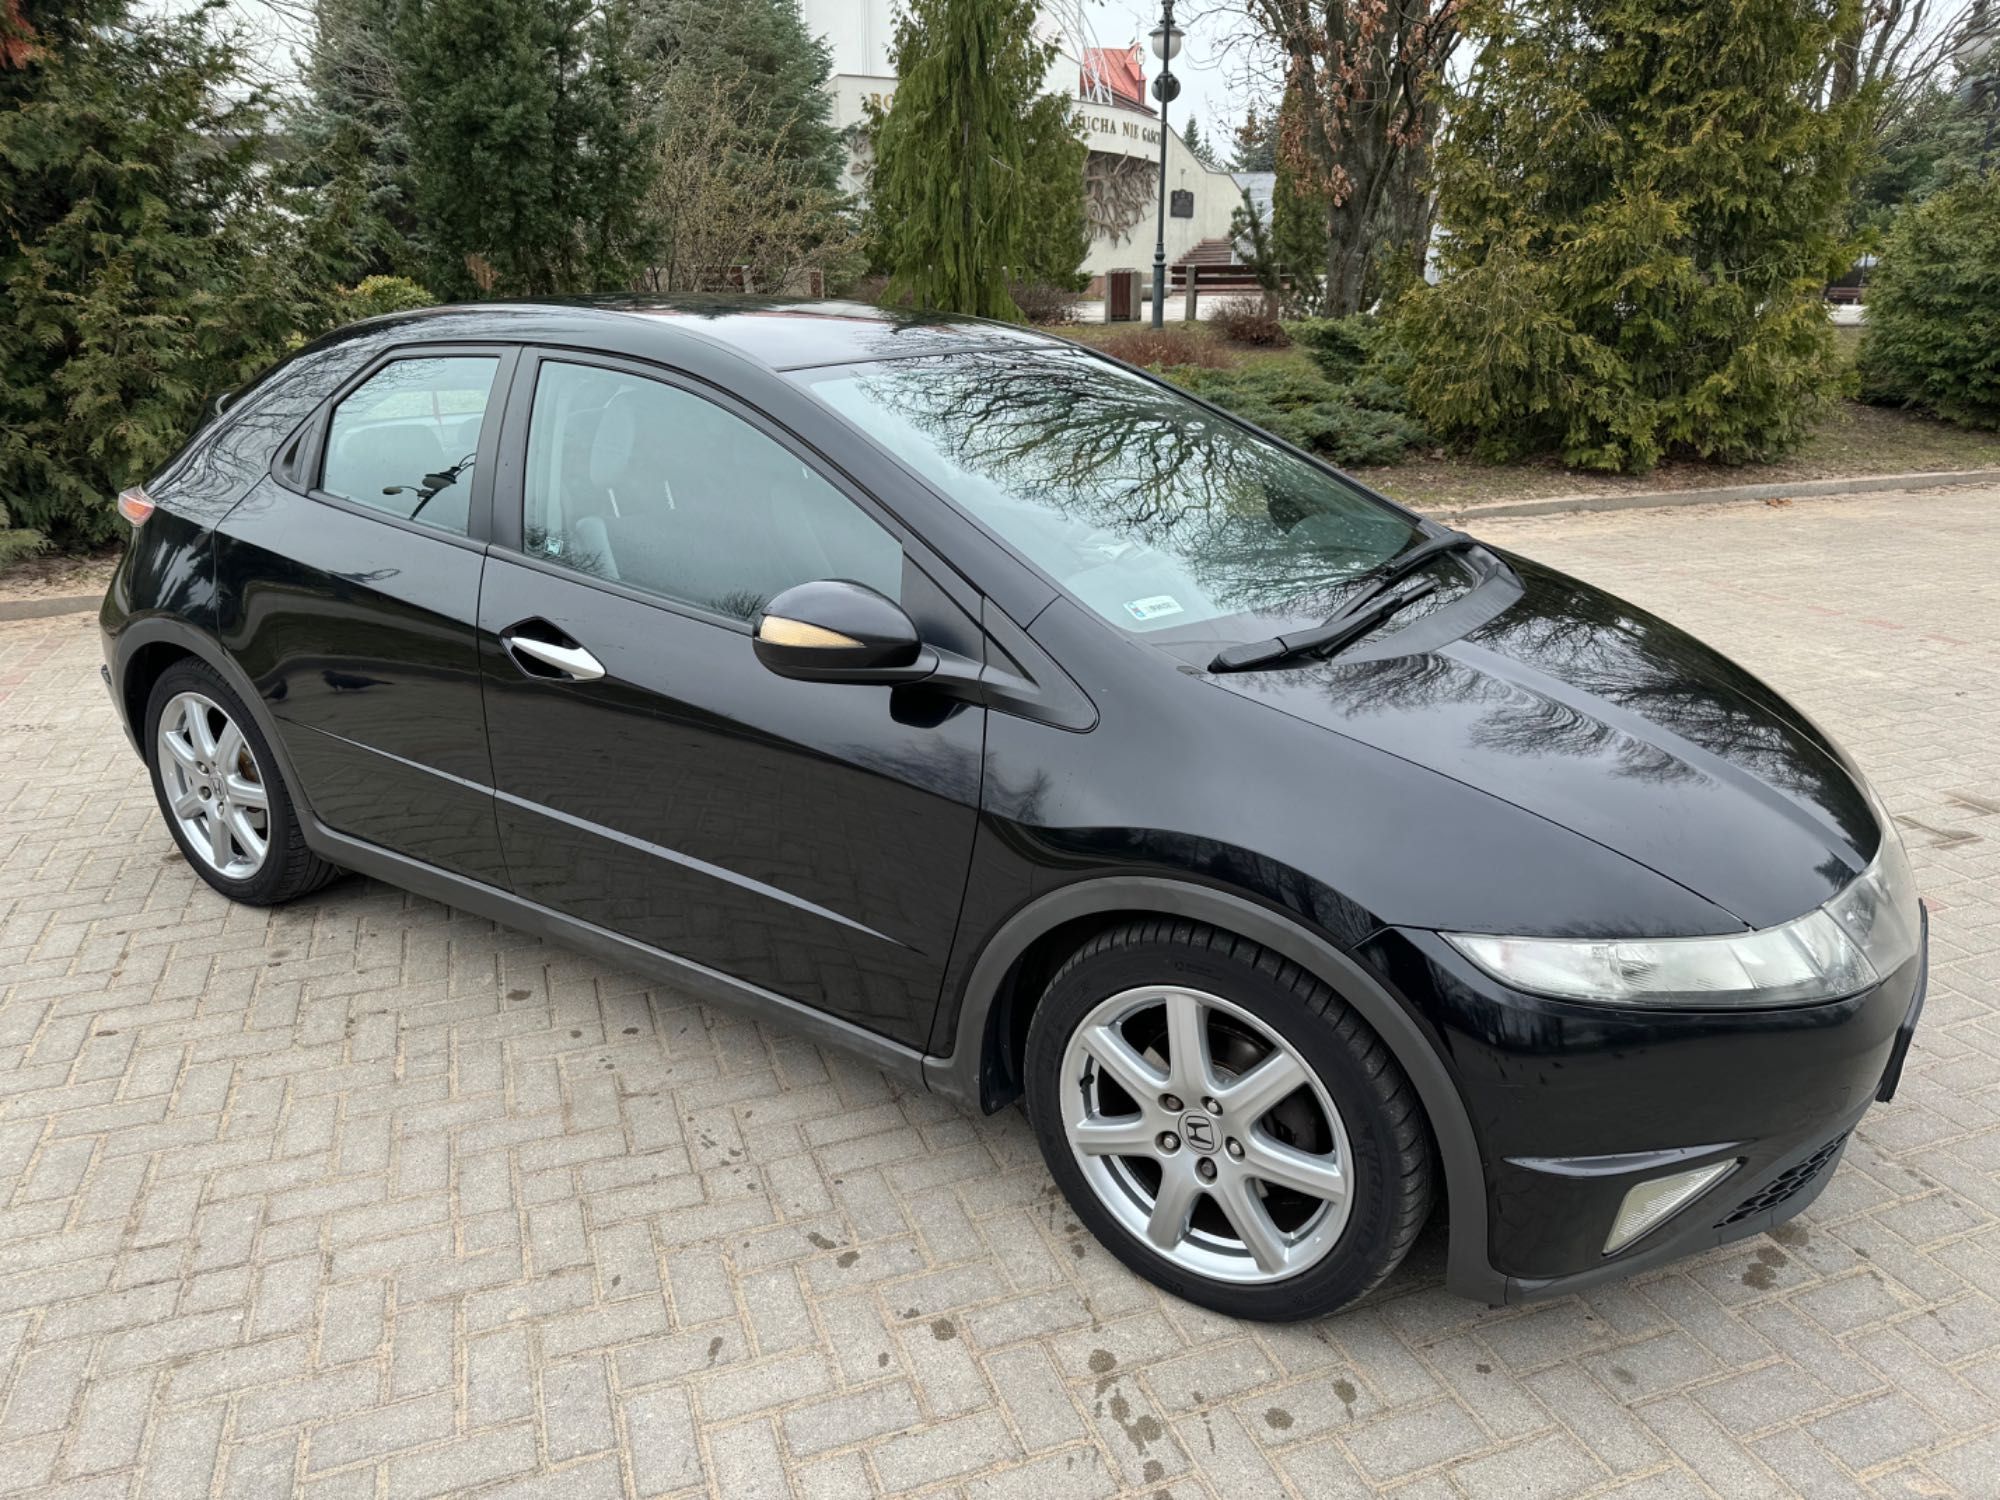 Honda Civic 1.8 benzyna 140KM Salon Polska 1 właściciel 5 drzwi